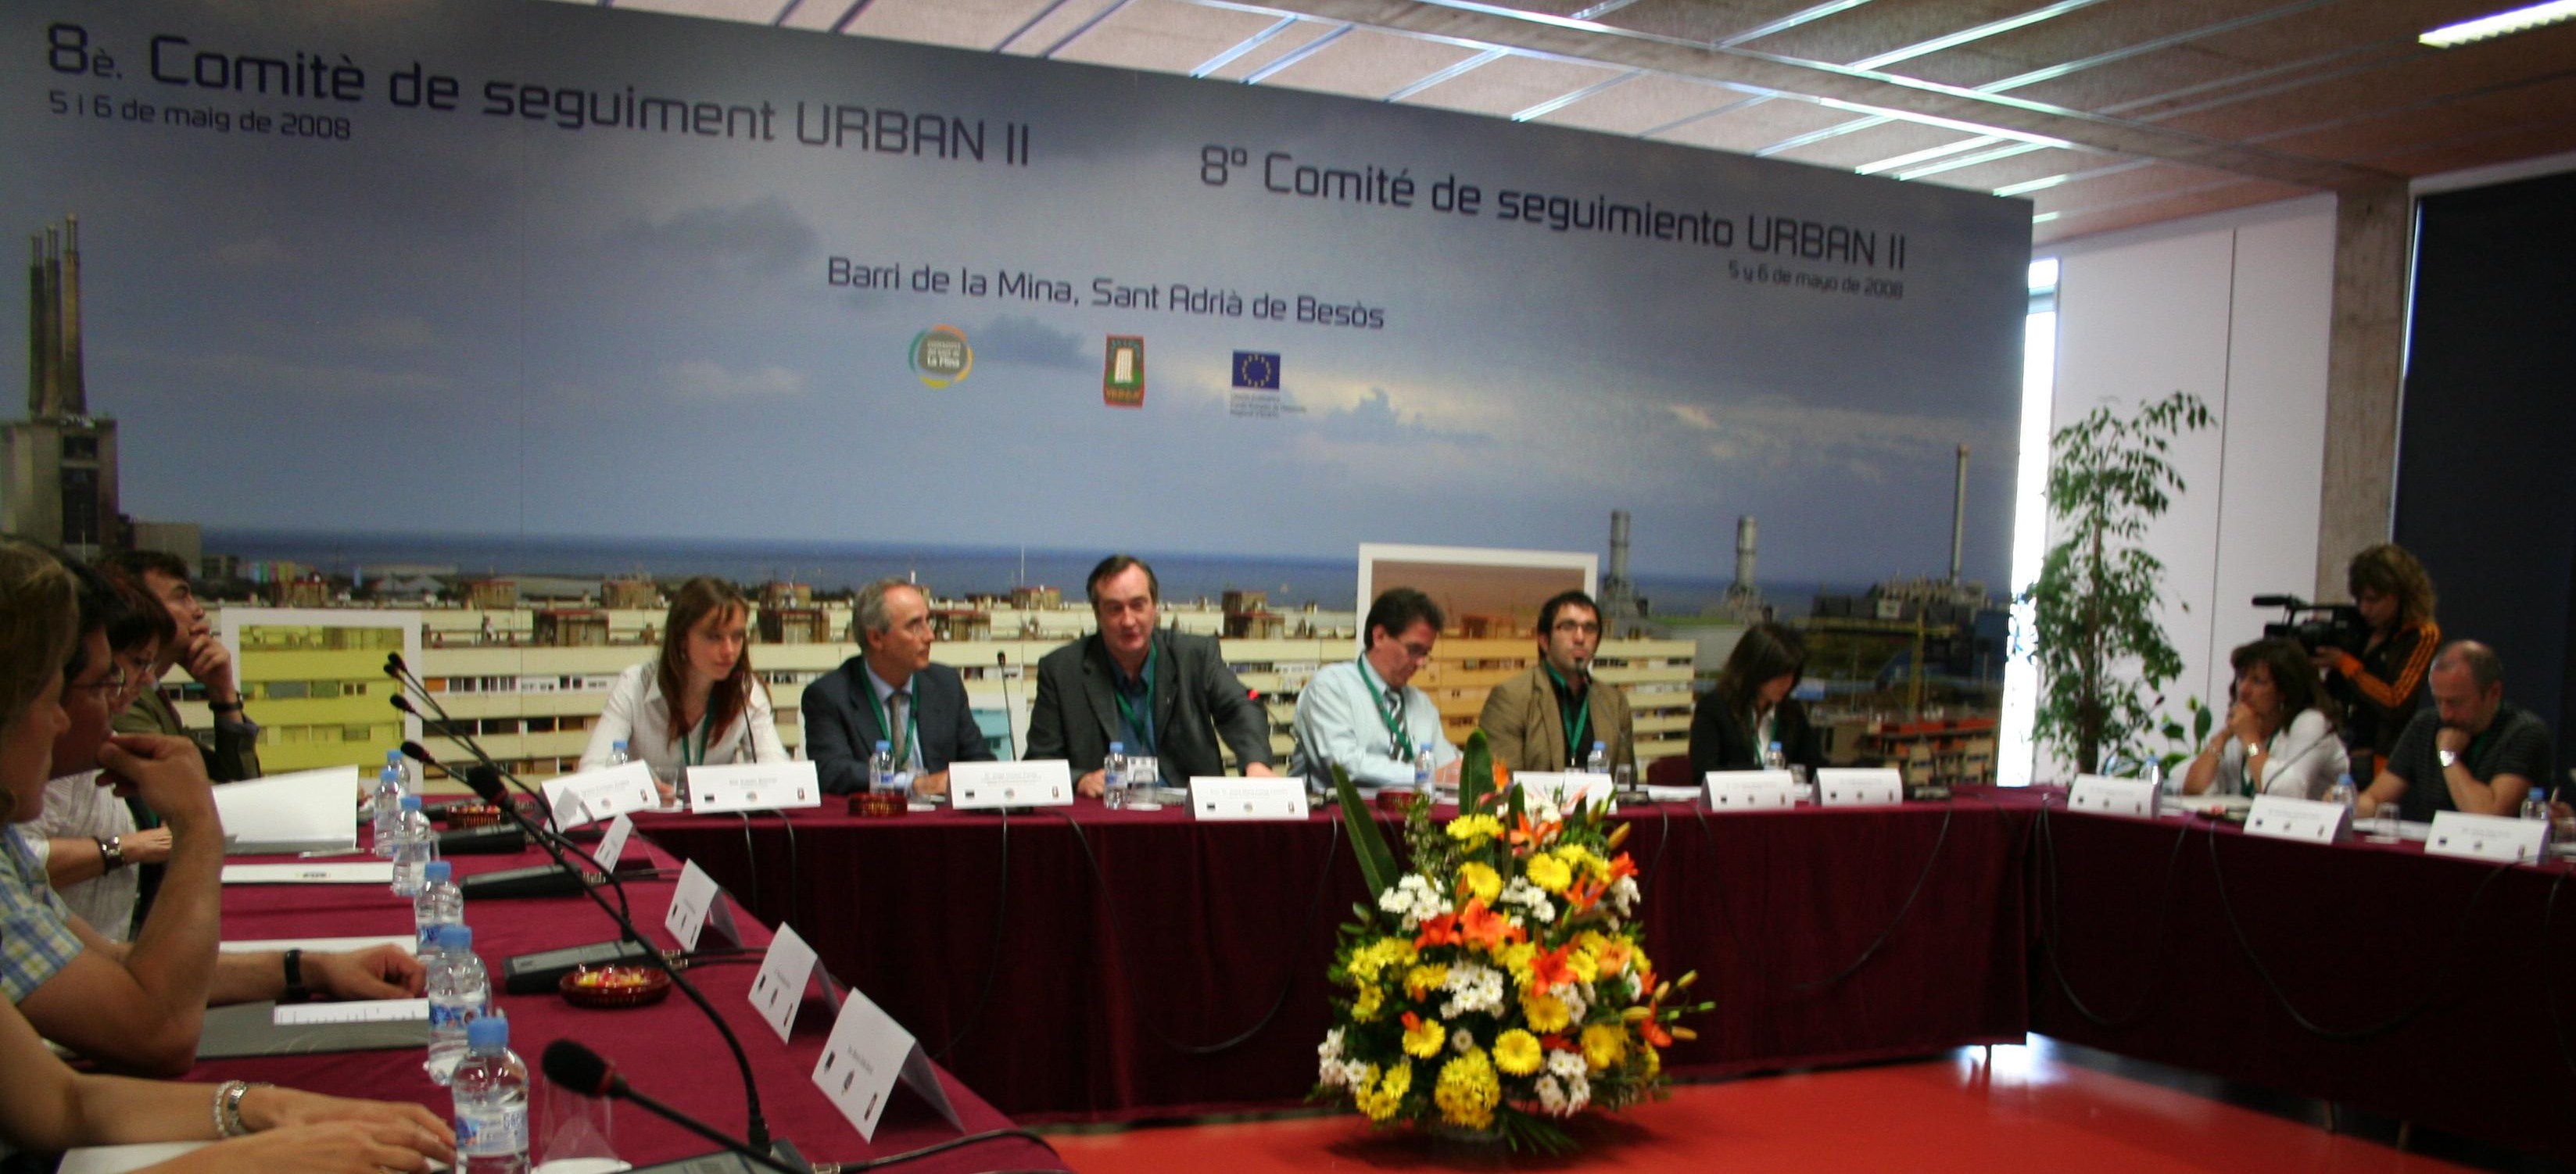 L'alcalde, Jesus MªCanga, va inagurar el 8è. Comitè de seguiment URBAN